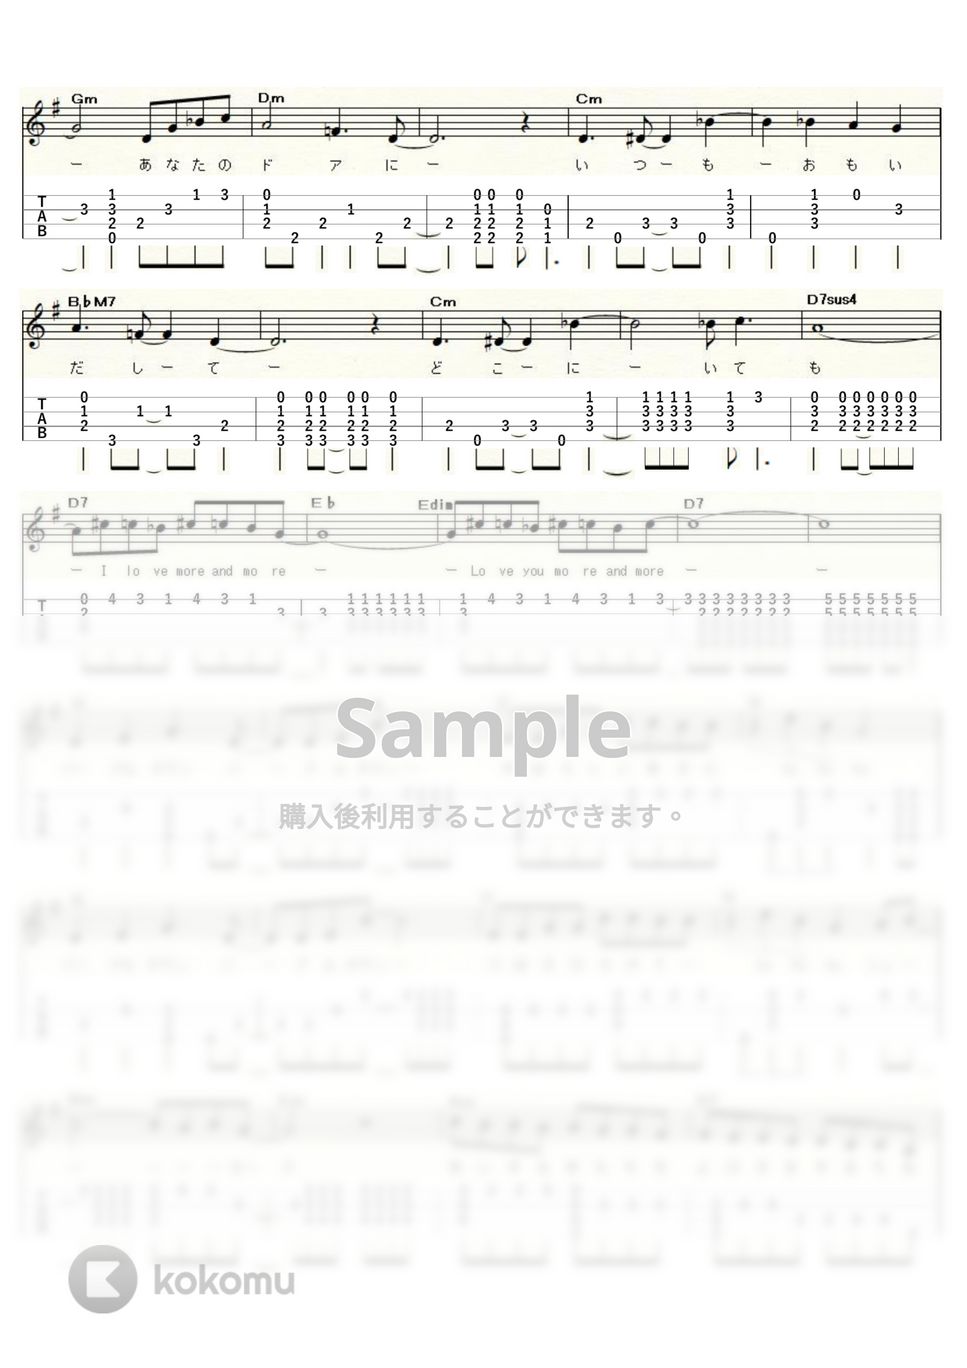 八神純子 - パープルタウン (ｳｸﾚﾚｿﾛ / Low-G / 中級) by ukulelepapa